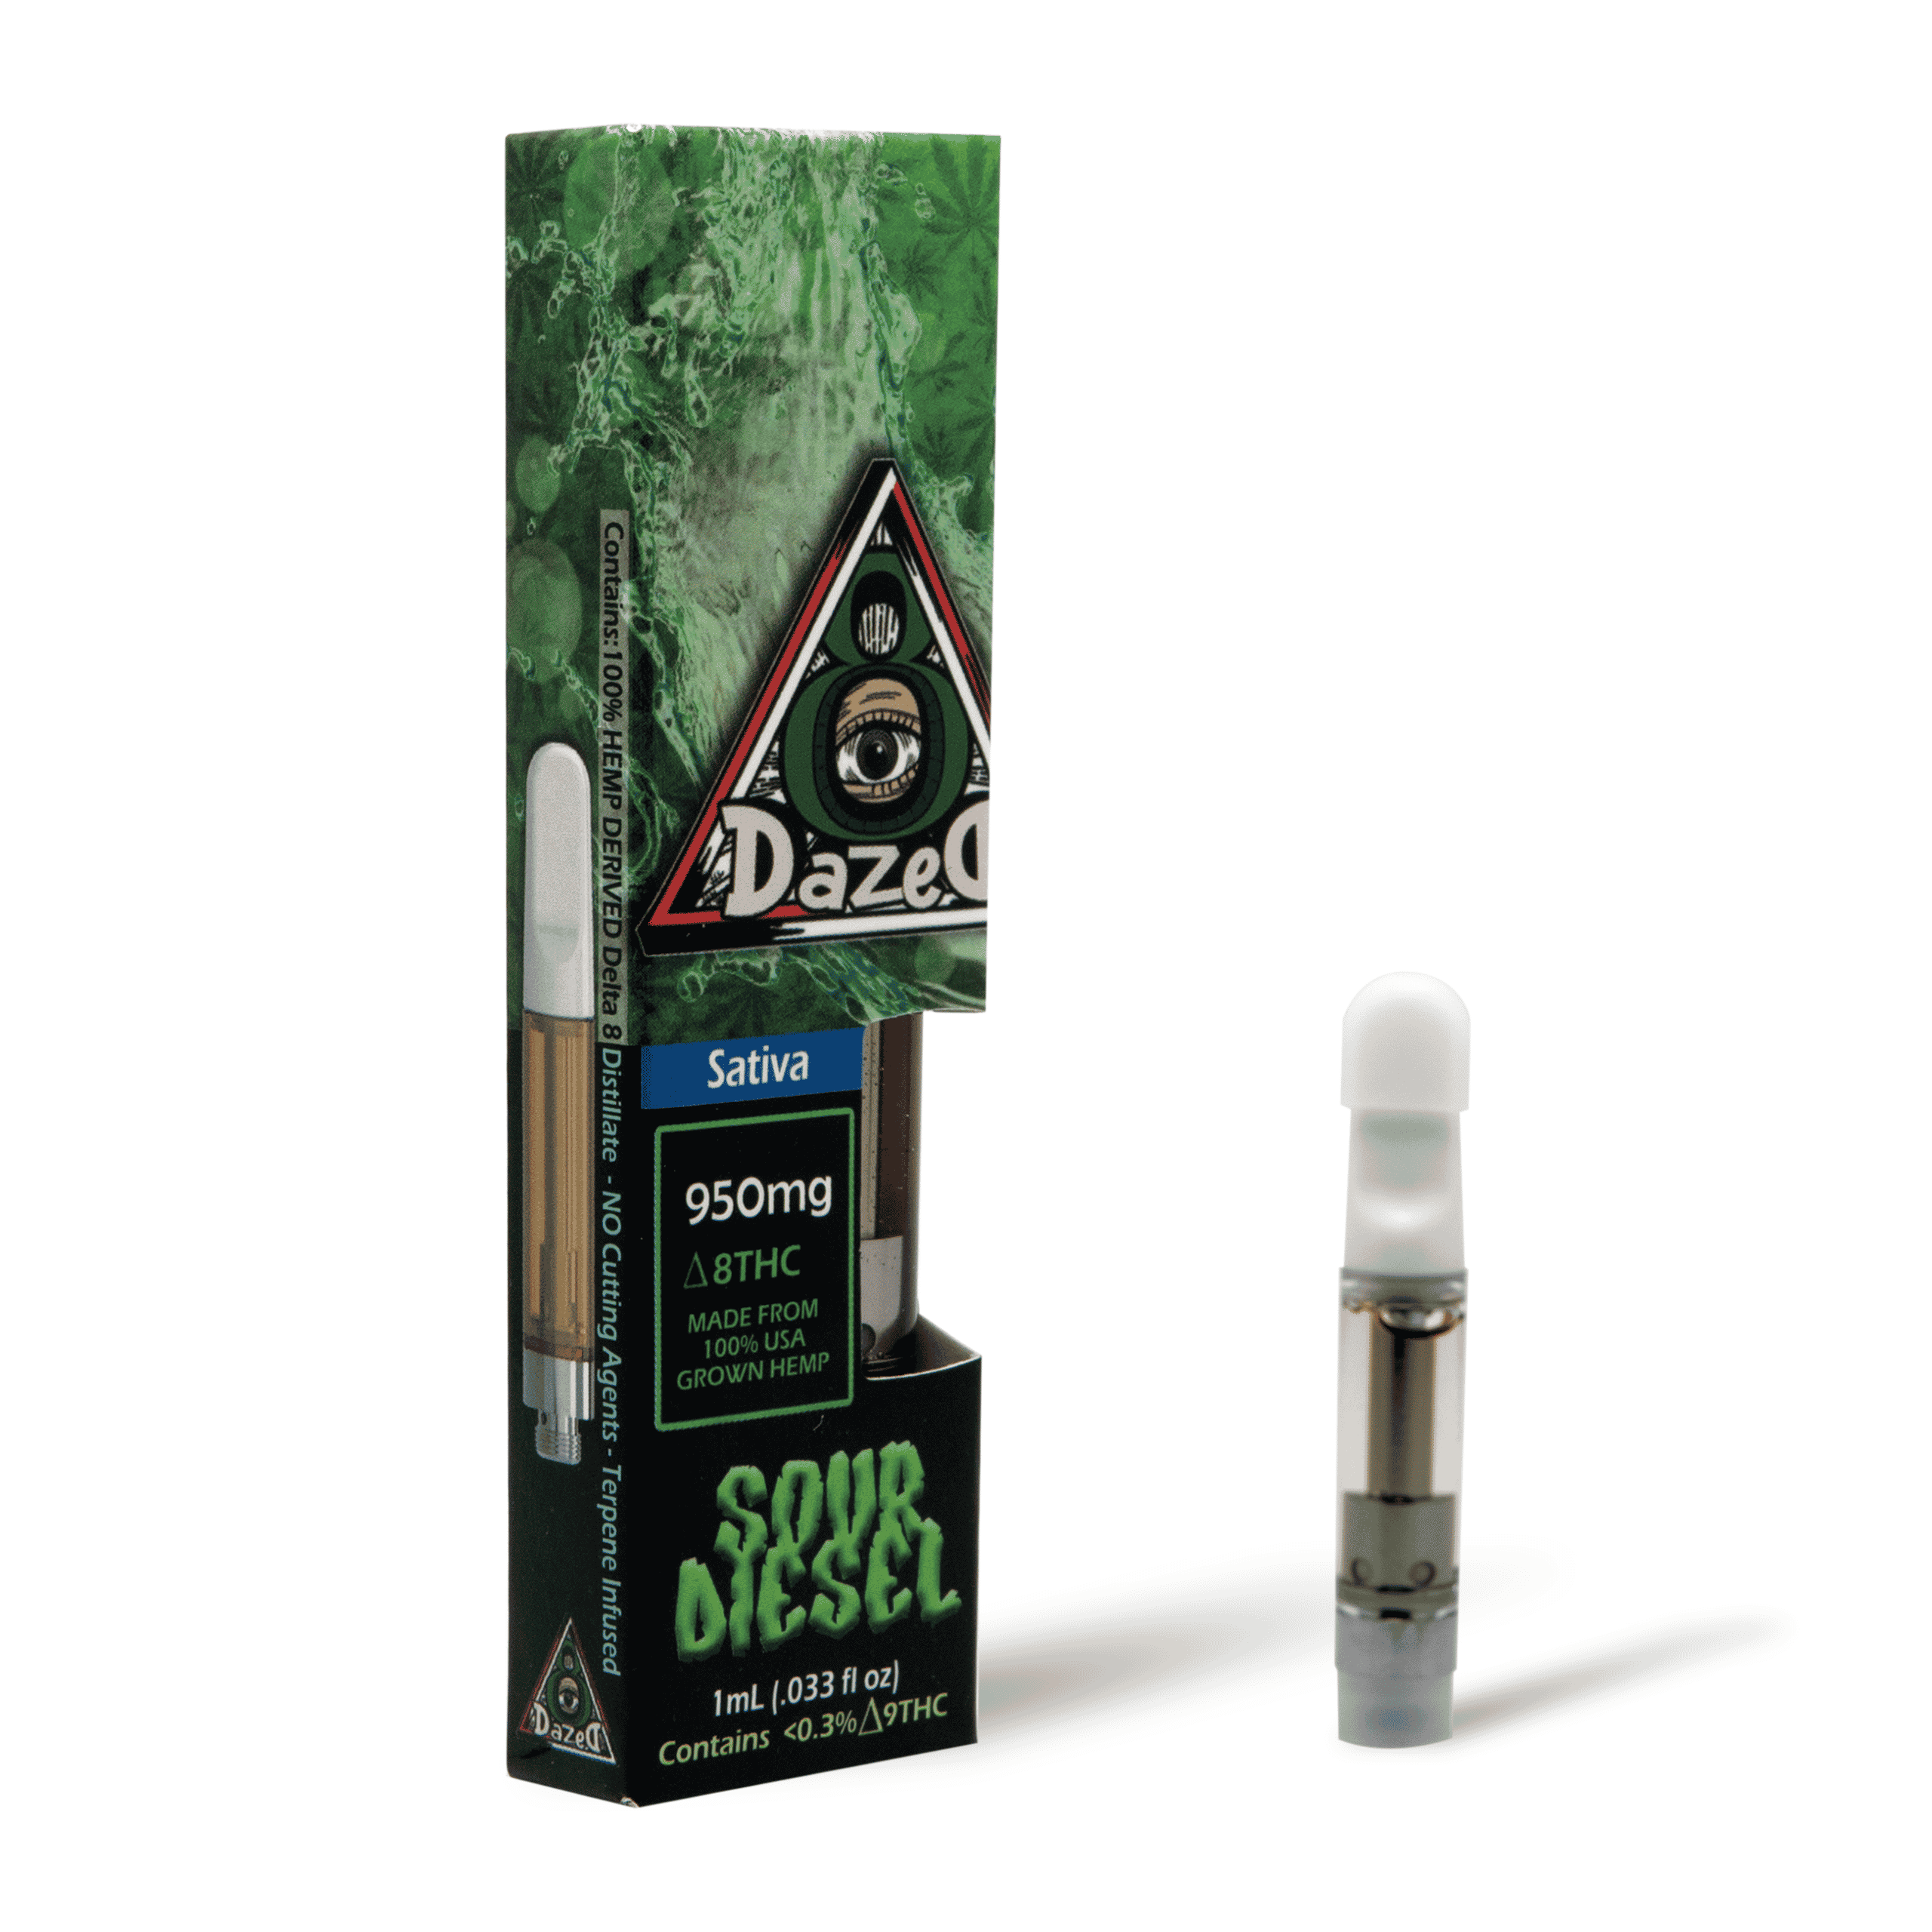 DazeD8 Sour Diesel Delta 8 Cartridge (1g) Best Price